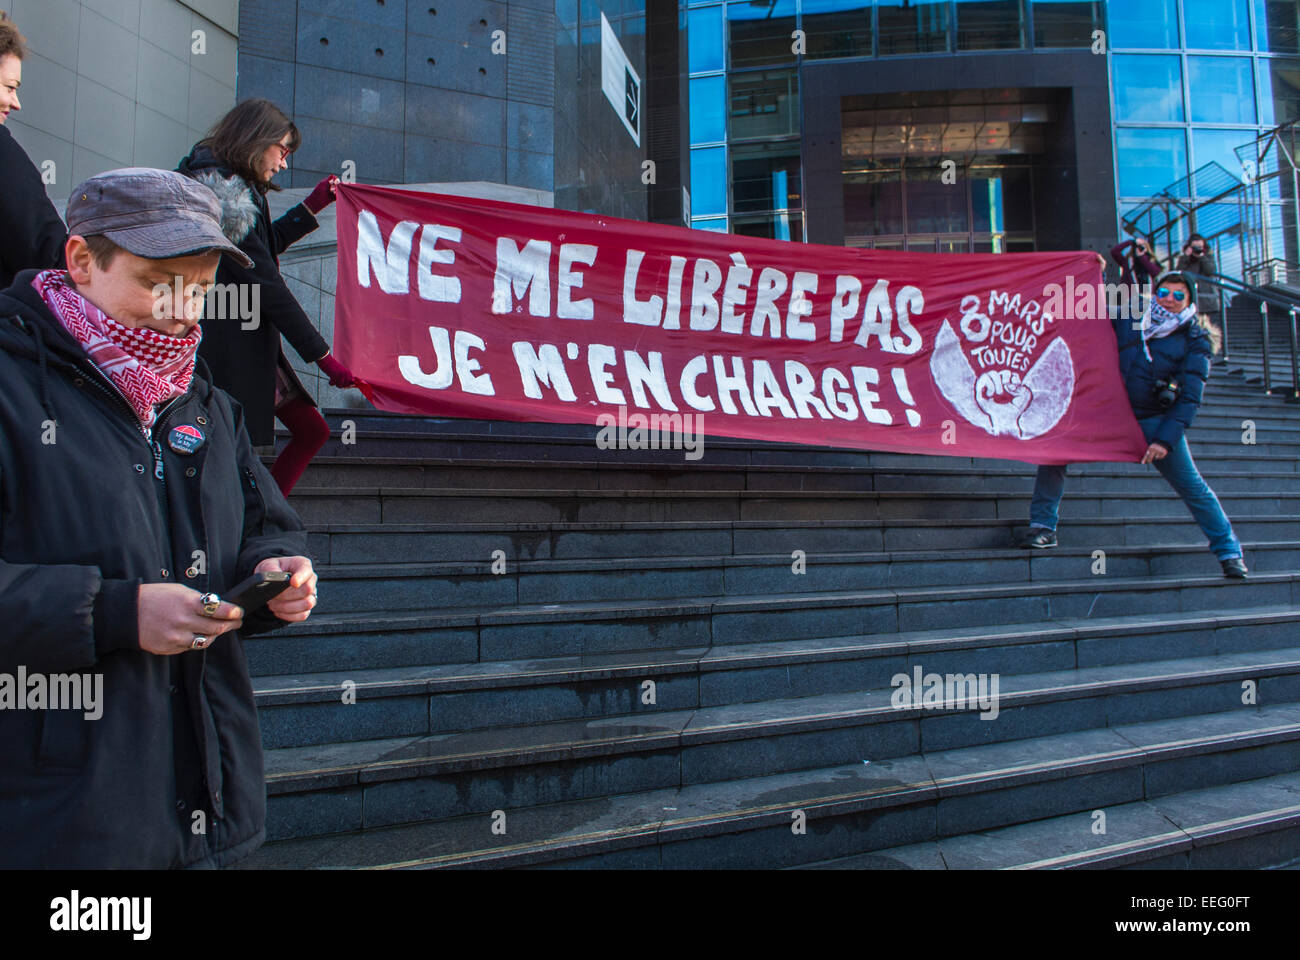 París, Francia, Grupos de N.G.O. franceses, Demostración feminista en honor del 40th Aniversario de la Legalización de la Ley del Aborto, '8 de marzo' El Banner dice: 'No me liberen, haré eso mismo' la protesta de los derechos de la mujer, el rally pro choice, la protesta pro aborto Foto de stock